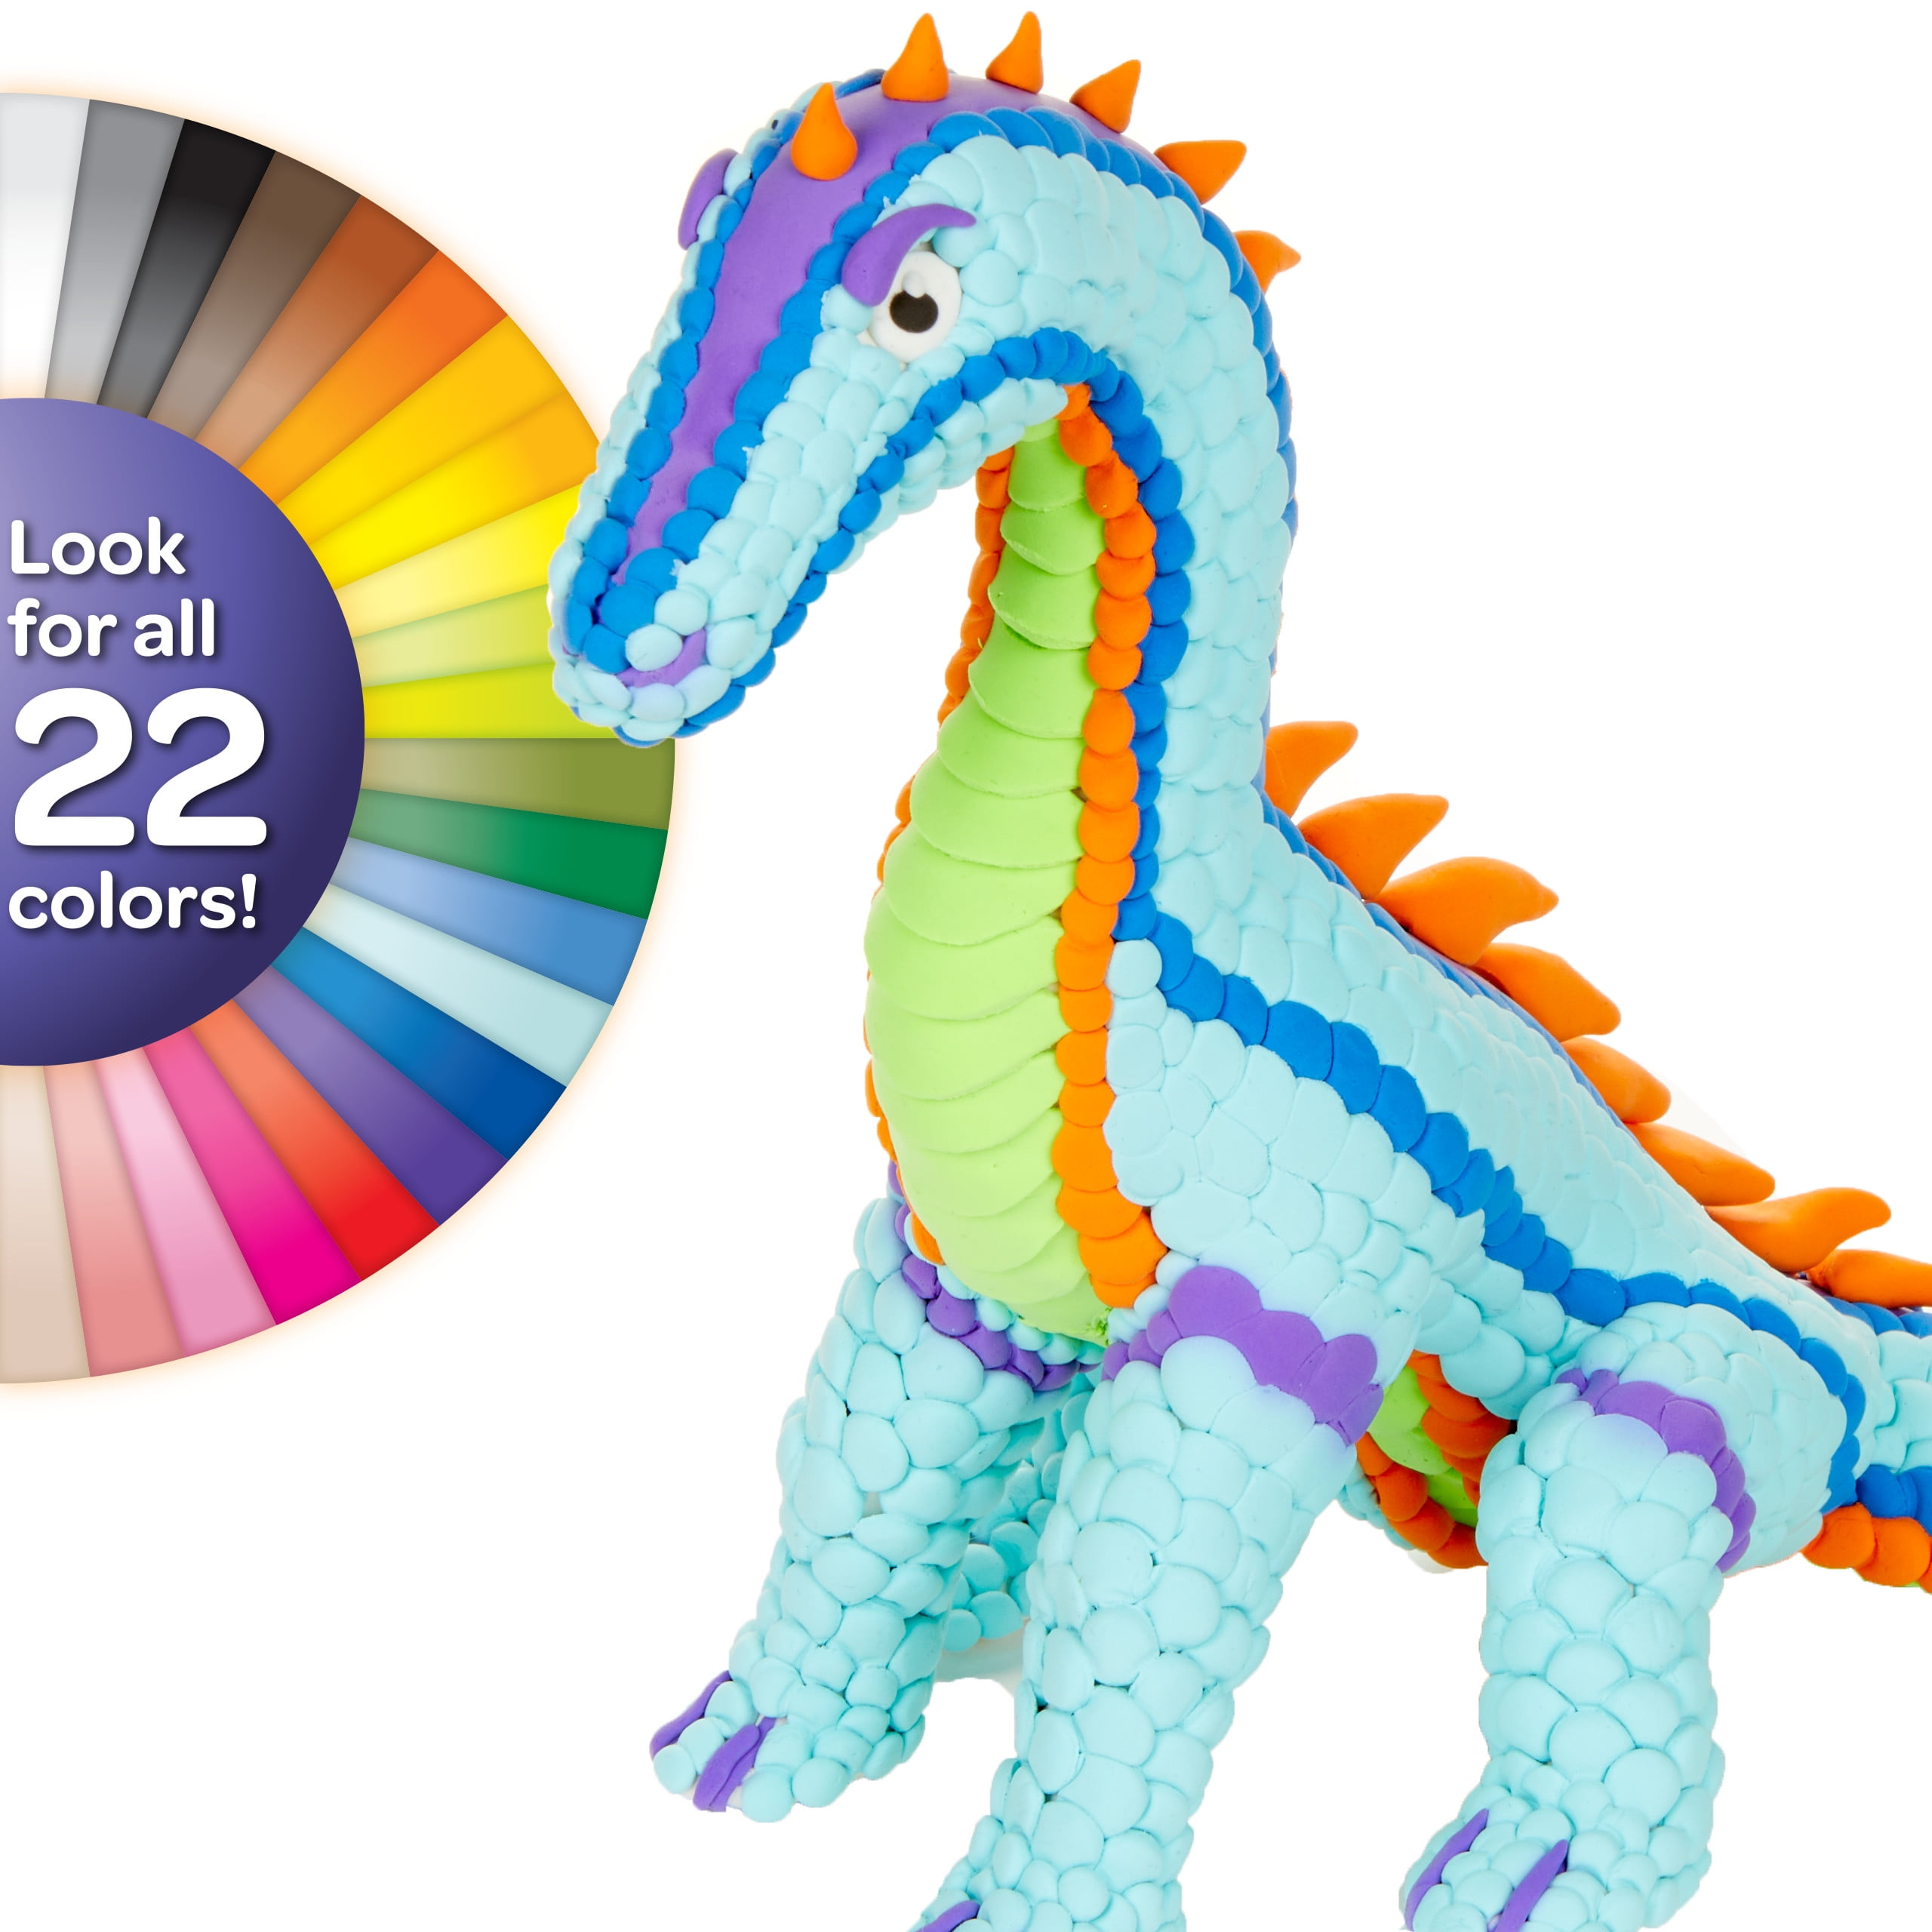  Crayola Model Magic Kit, Multicoloured, 22.86 x 13.97 x 2.03  cm, Purple : Everything Else